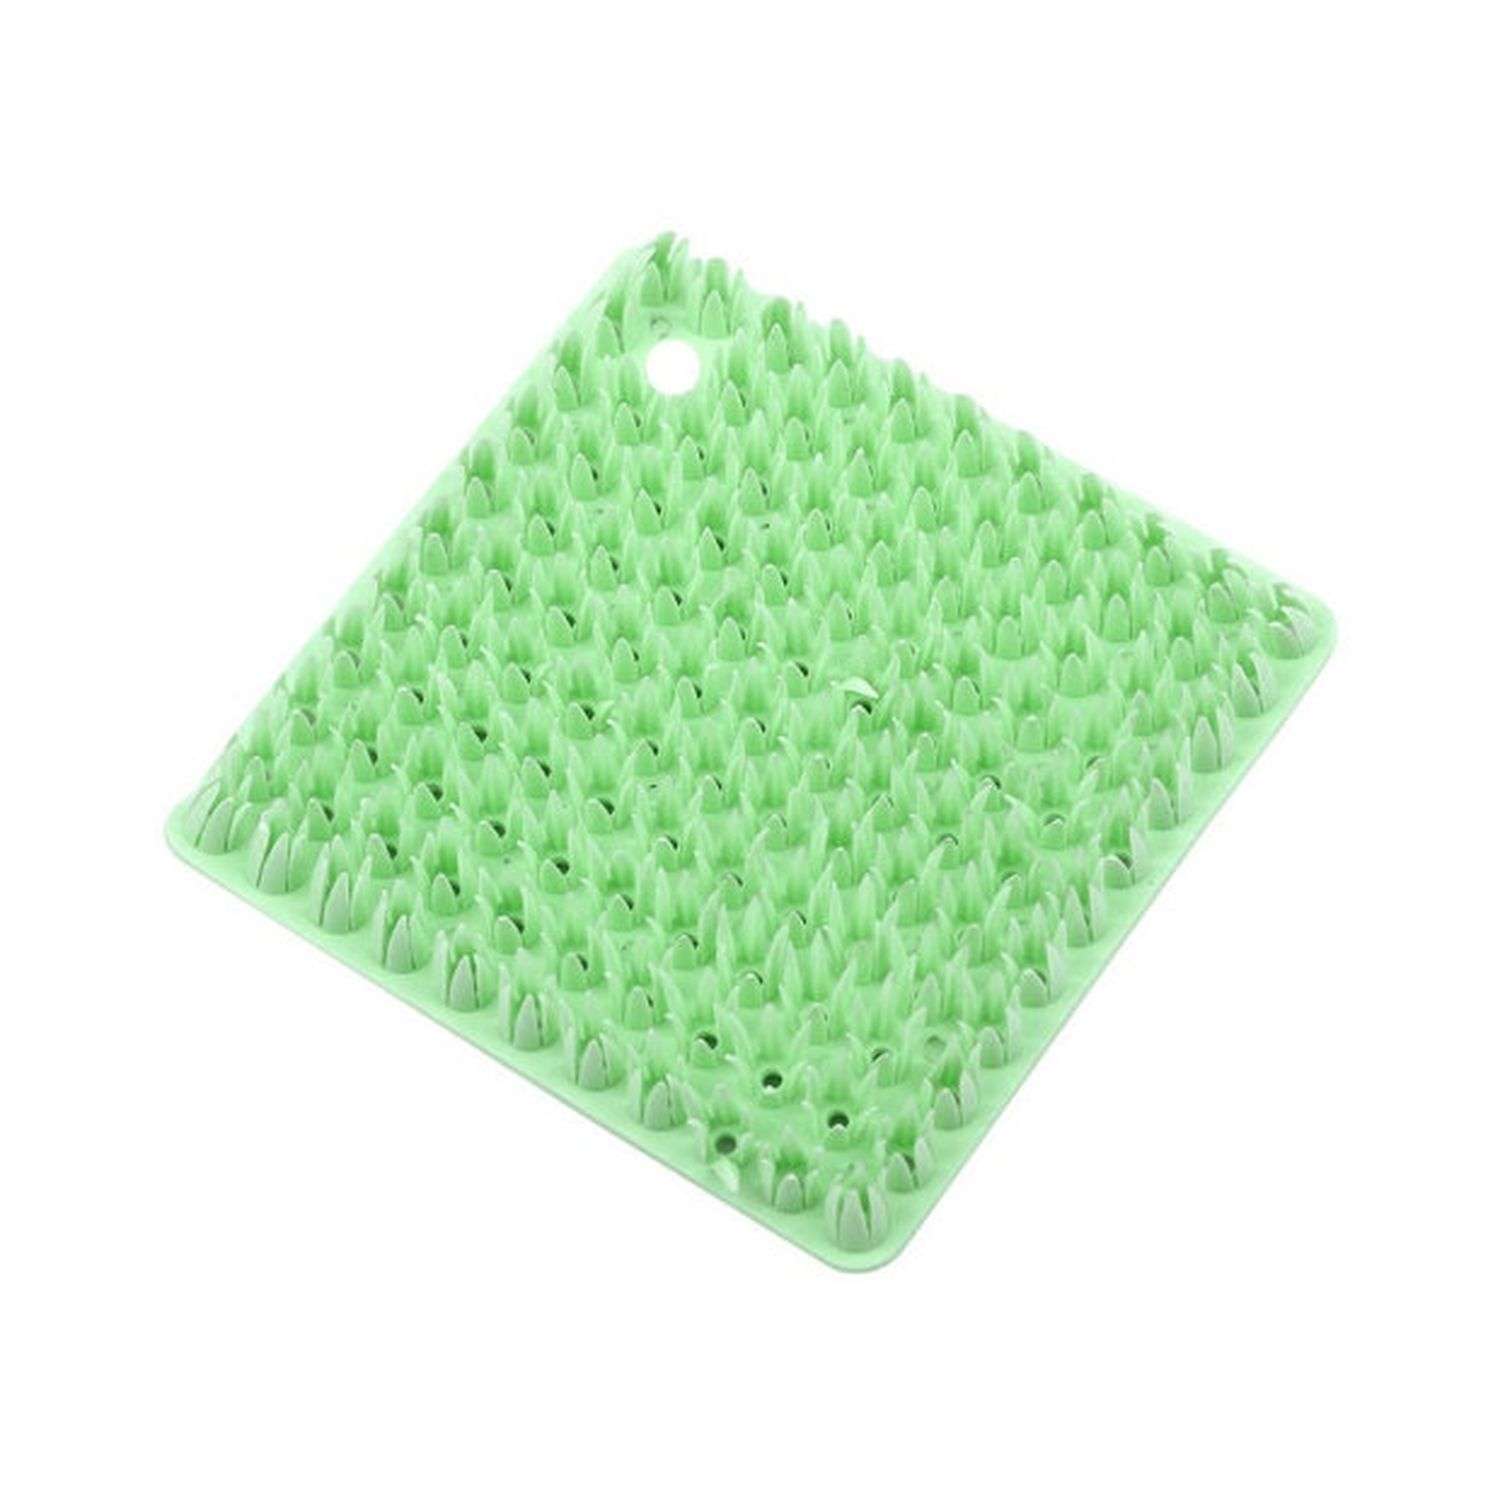 Полимерная губка Seichi Универсальная со щетиной 10х10 см зеленая - фото 1